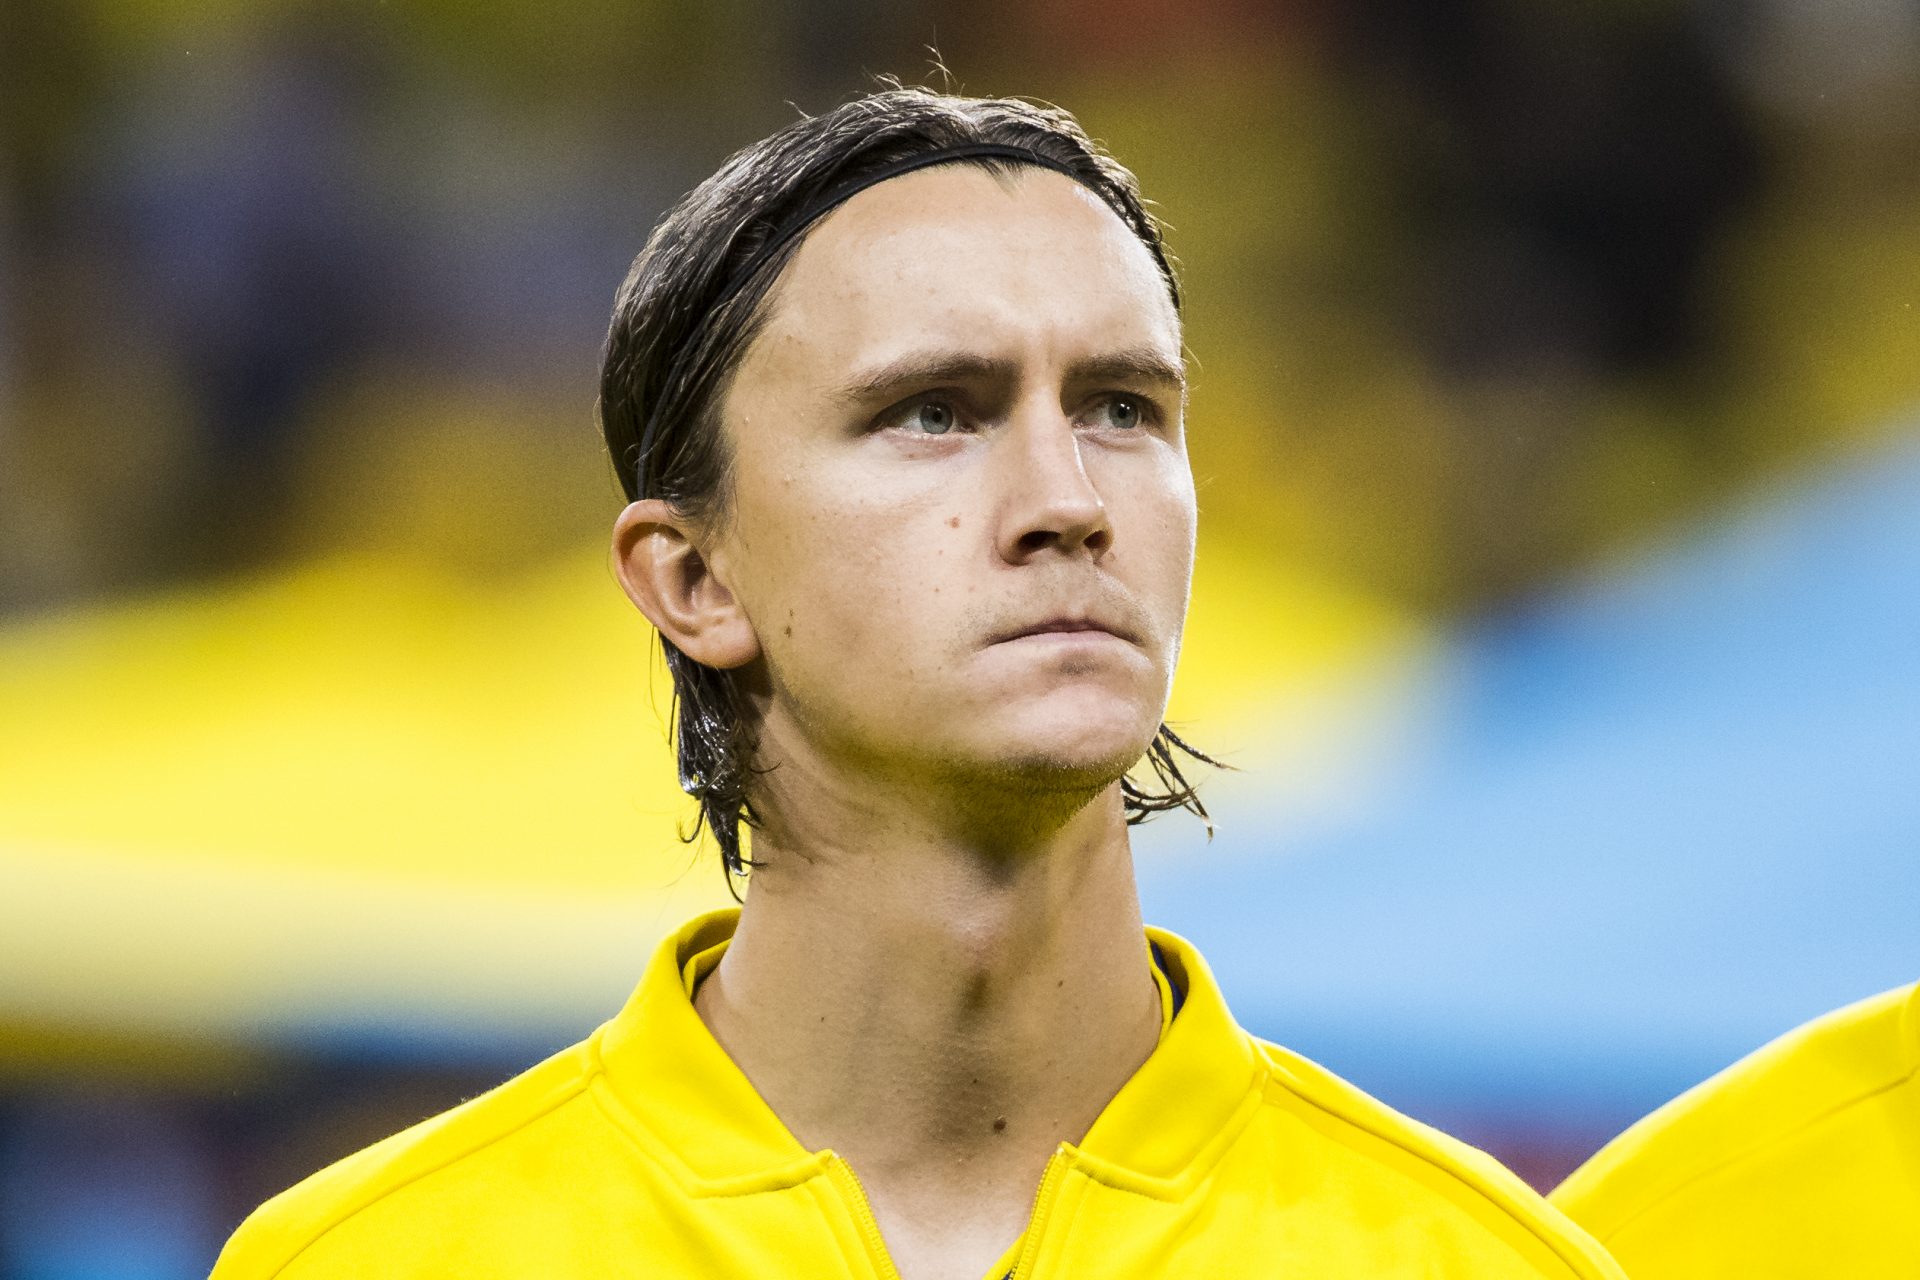 Preocupación por el repentino desvanecimiento del futbolista sueco Kristoffer Olsson